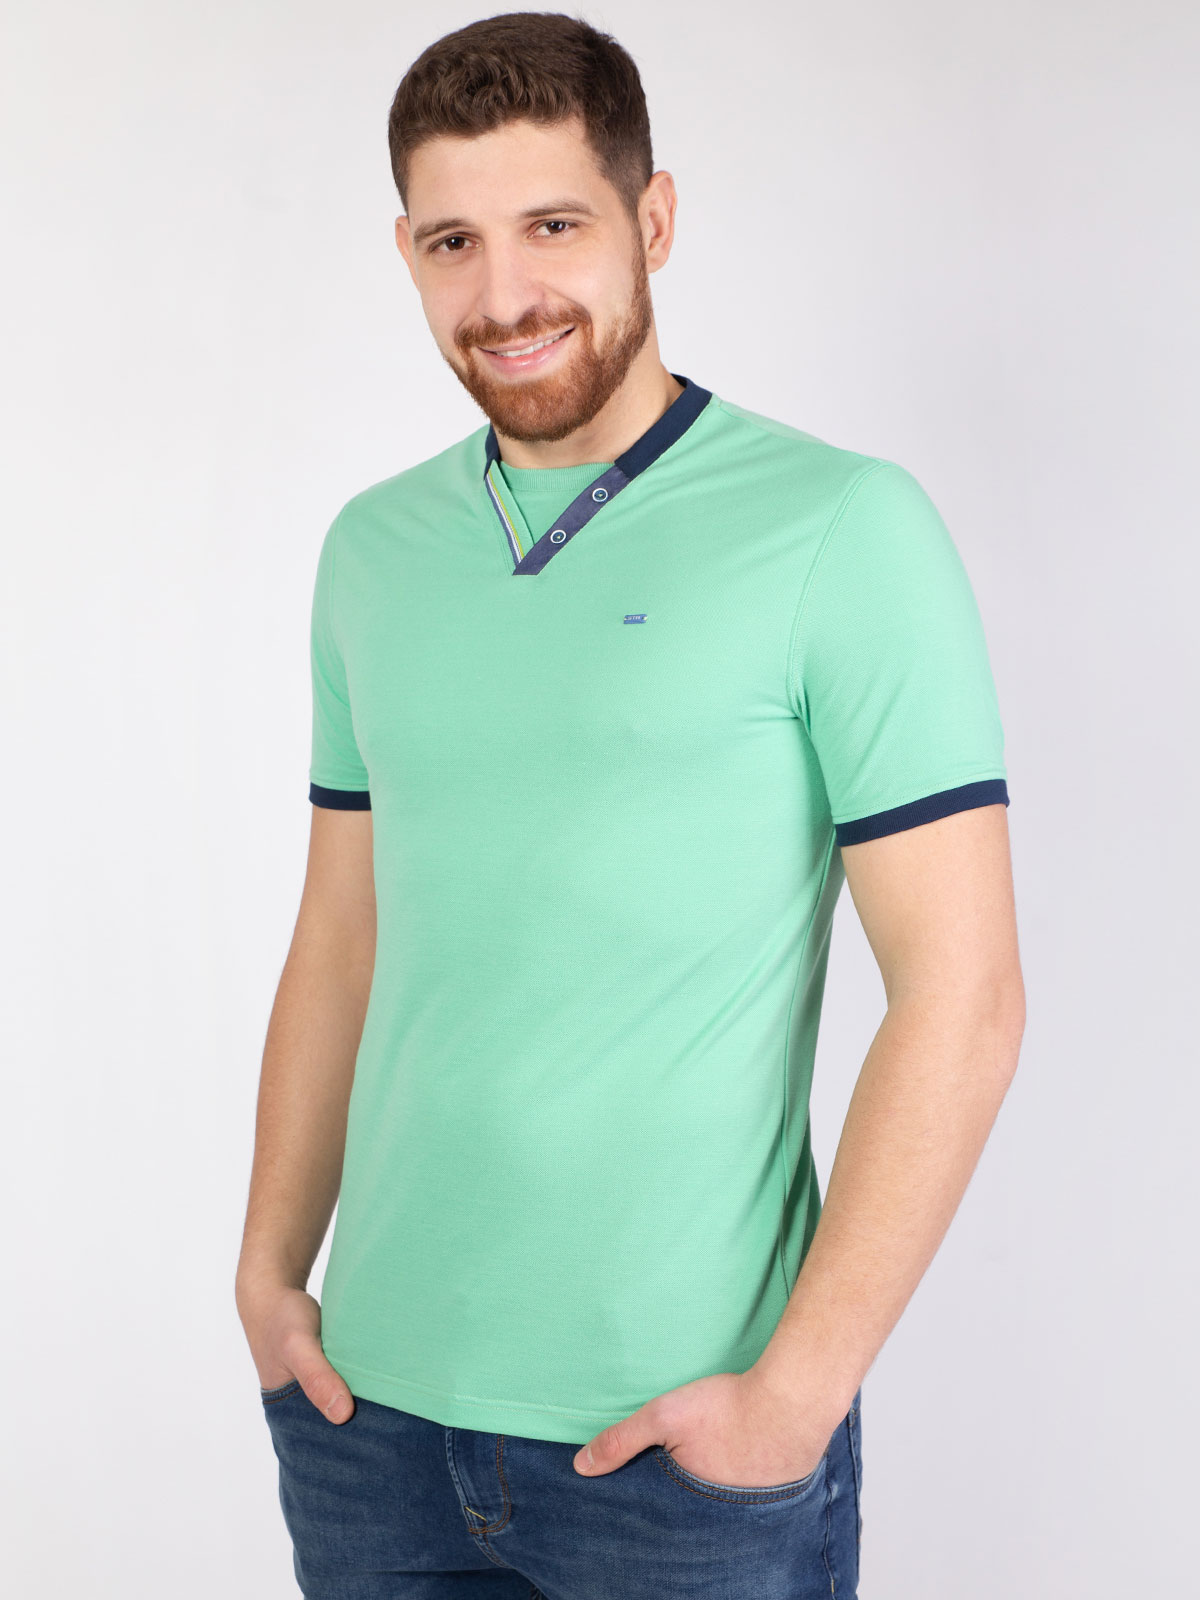 Κοντομάνικη μπλούζα με τζιν προφορά - 96396 € 21.93 img4